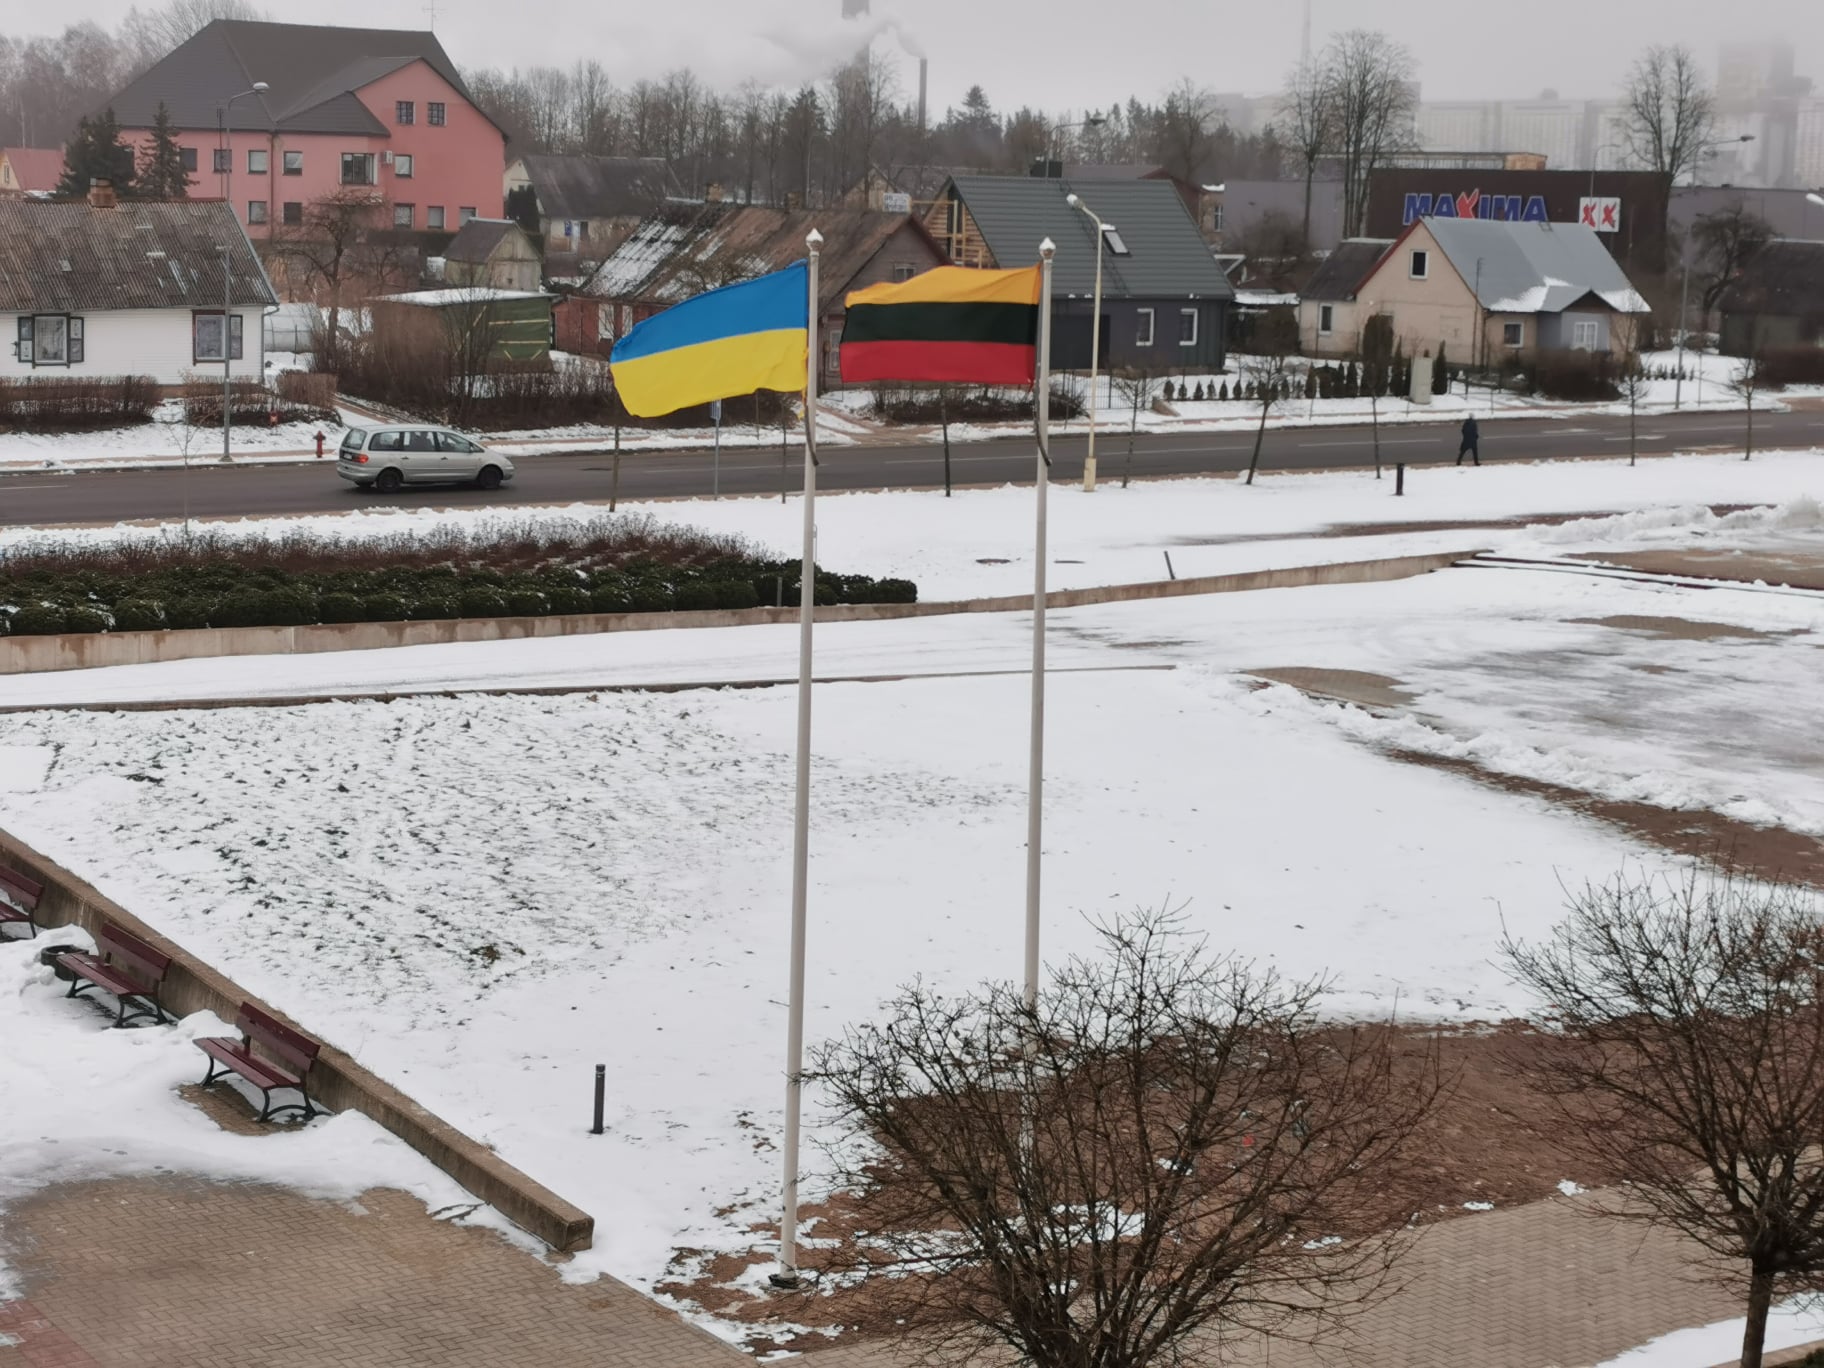 Rokiškio rajono savivaldybė ruošiasi padėti Ukrainai ir nuolat palaiko ryšį su Dubno miestu partn...